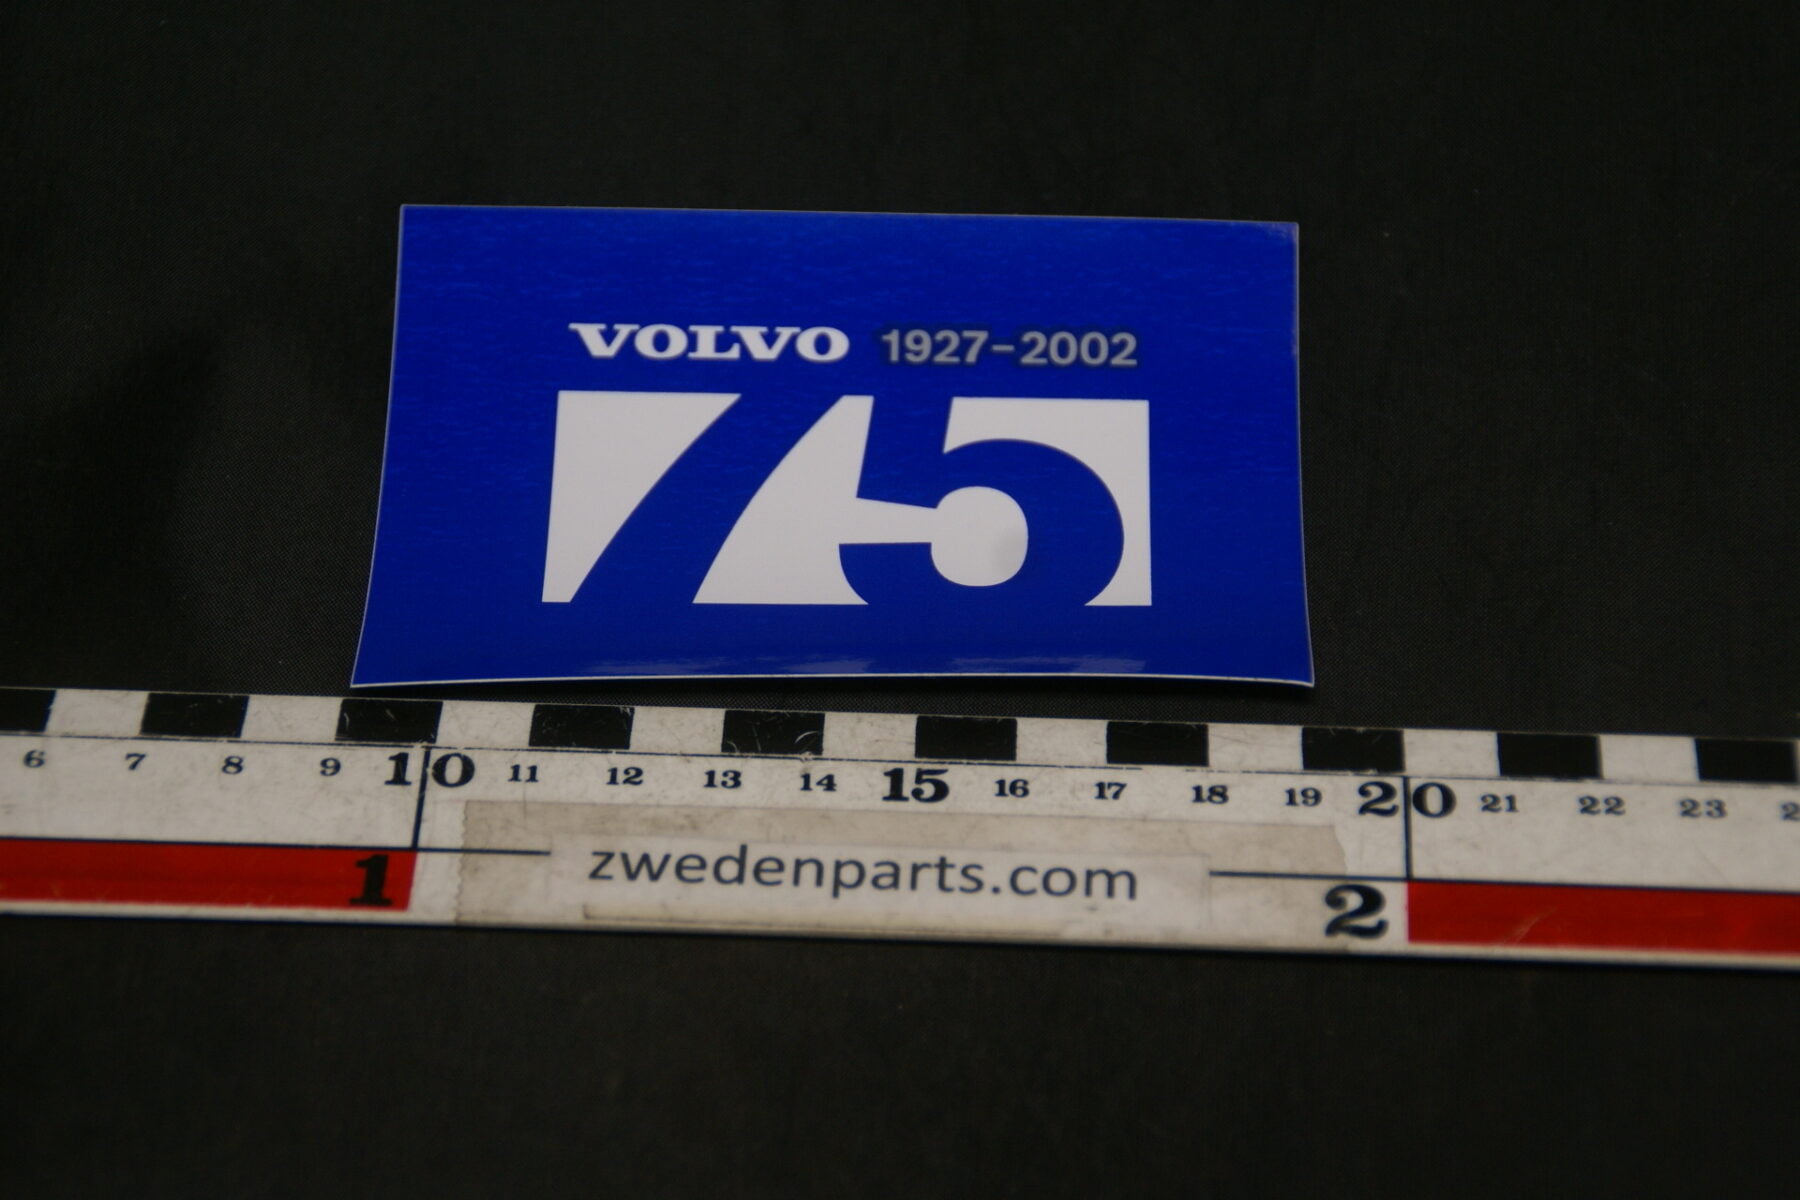 DSC02575 2002 originele sticker Volvo 75 jaar NOS-3ced02b1